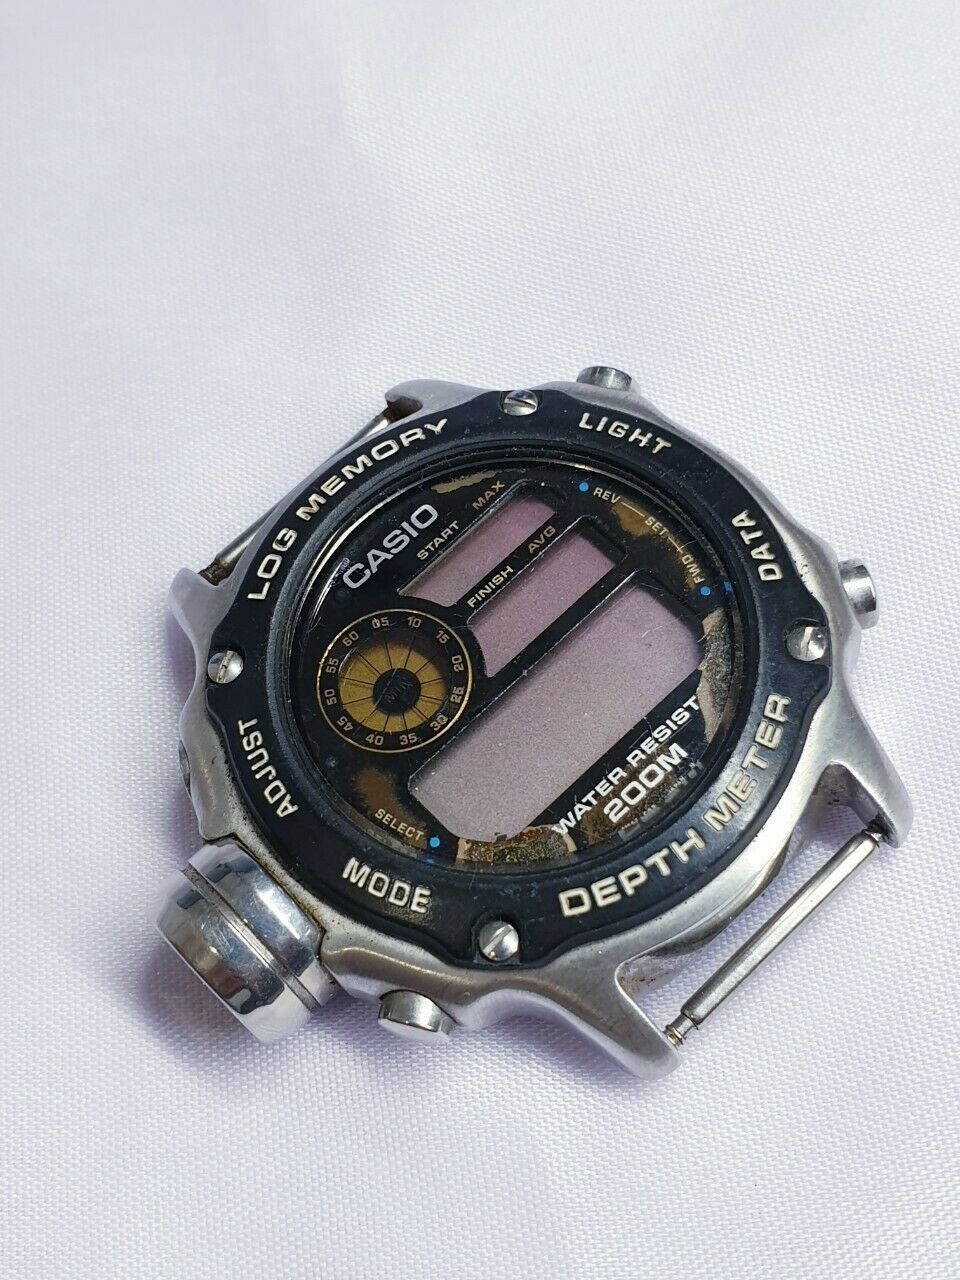 Casio Log Memory Depth Meter Air Divers M DEP Japan Digital